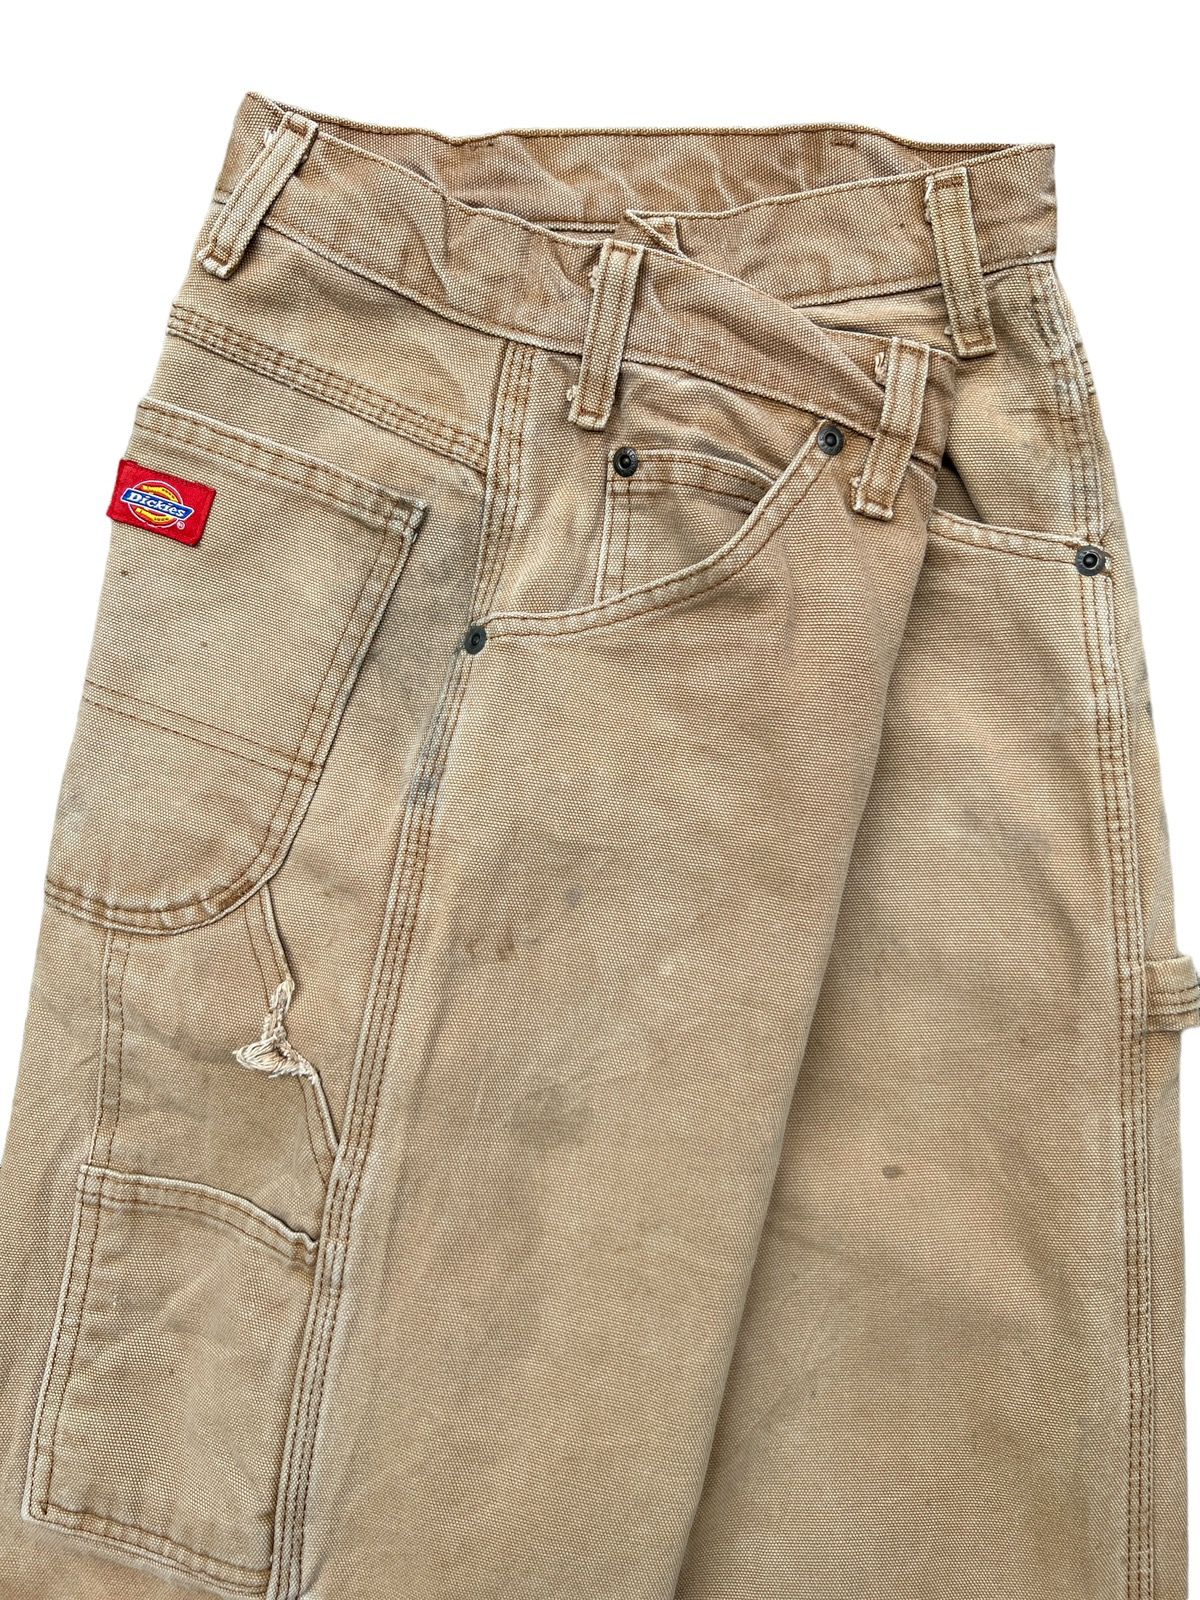 Vintage 90s Dickies Workwear Faded Distressed Baggy Pants - 11